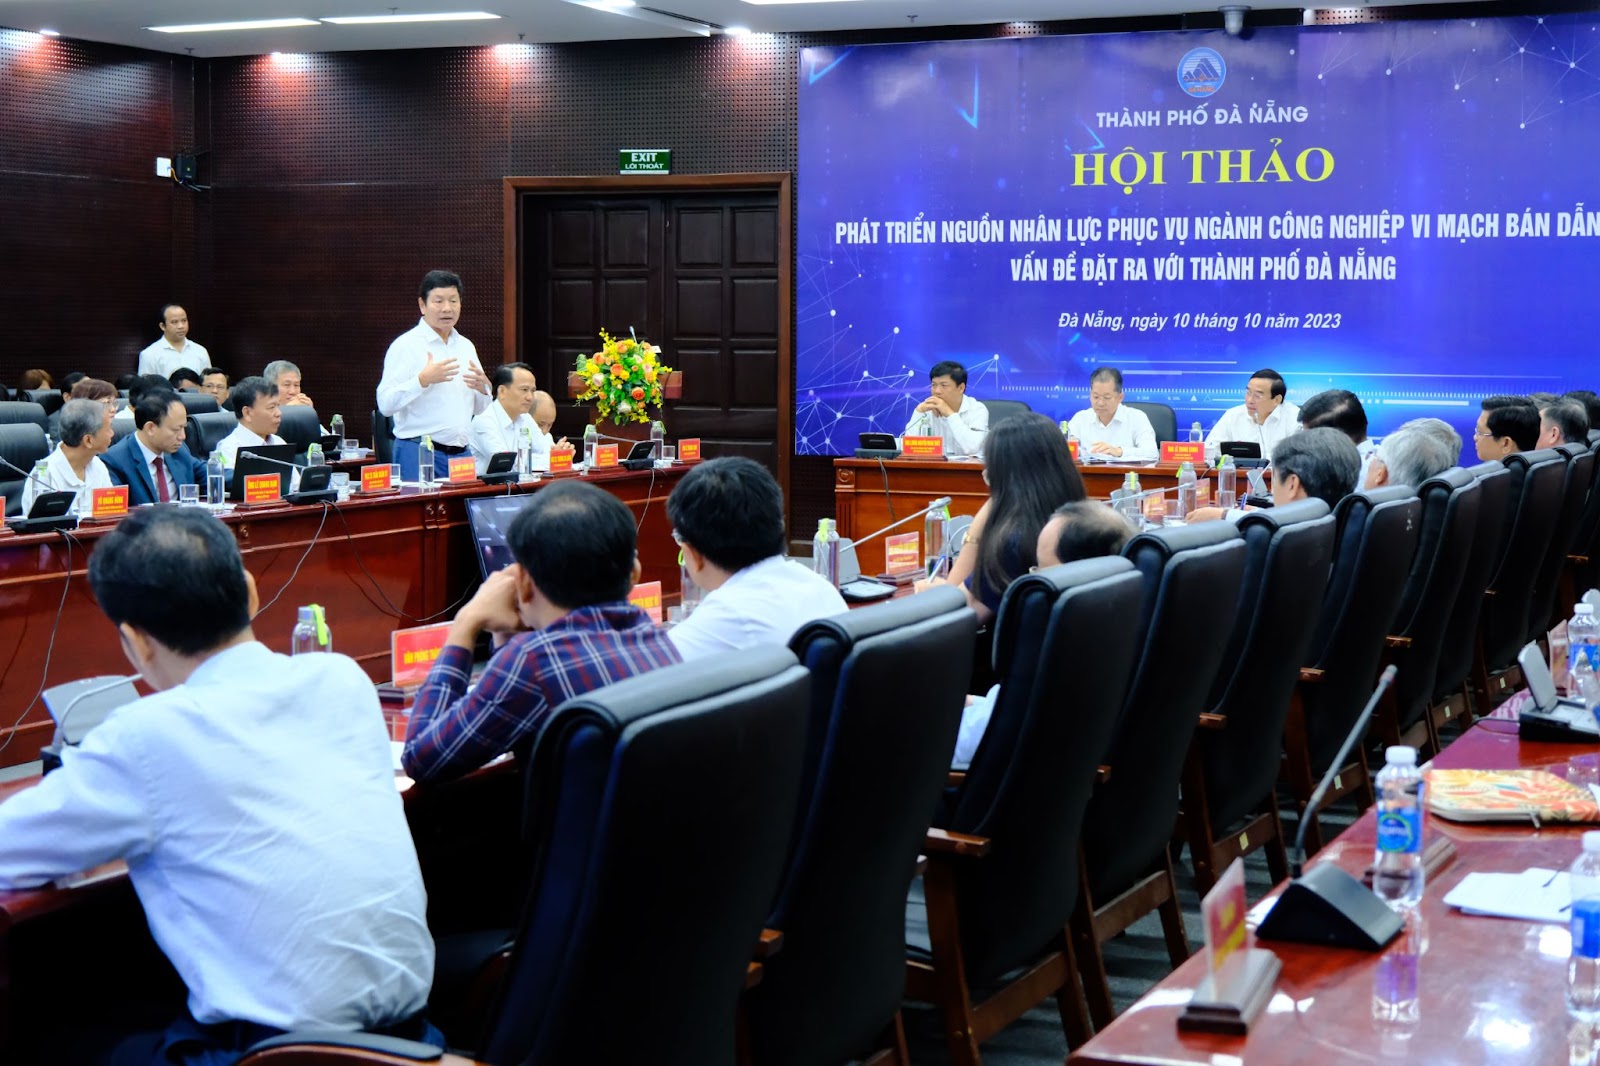 Chủ tịch FPT - Trương Gia Bình: Đà Nẵng sẽ có tên trong hệ sinh thái vi mạch bán dẫn thế giới - Ảnh 2.